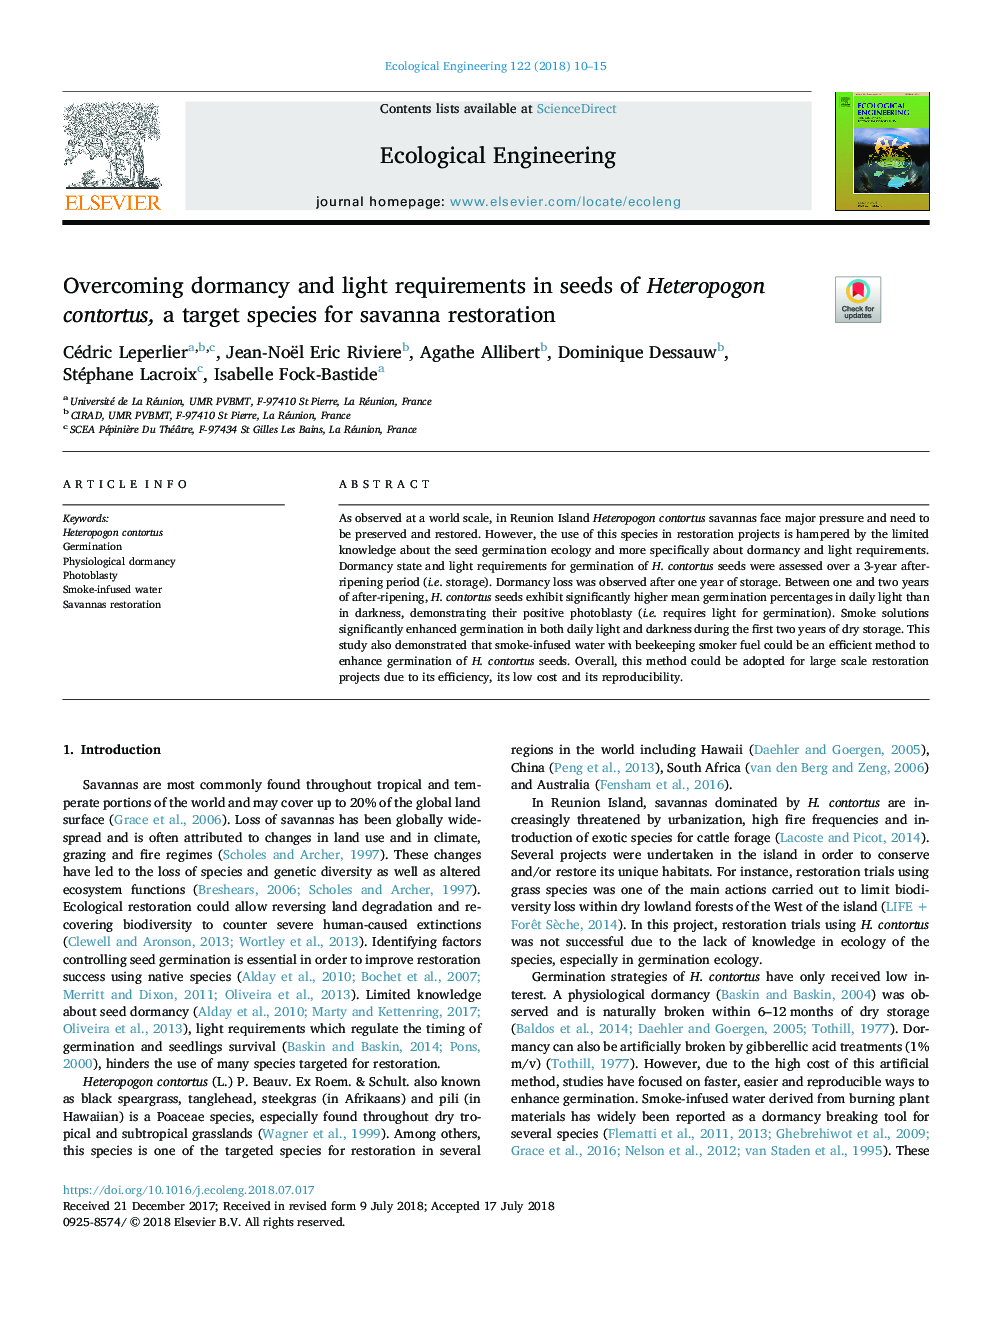 Overcoming dormancy and light requirements in seeds of Heteropogon contortus, a target species for savanna restoration